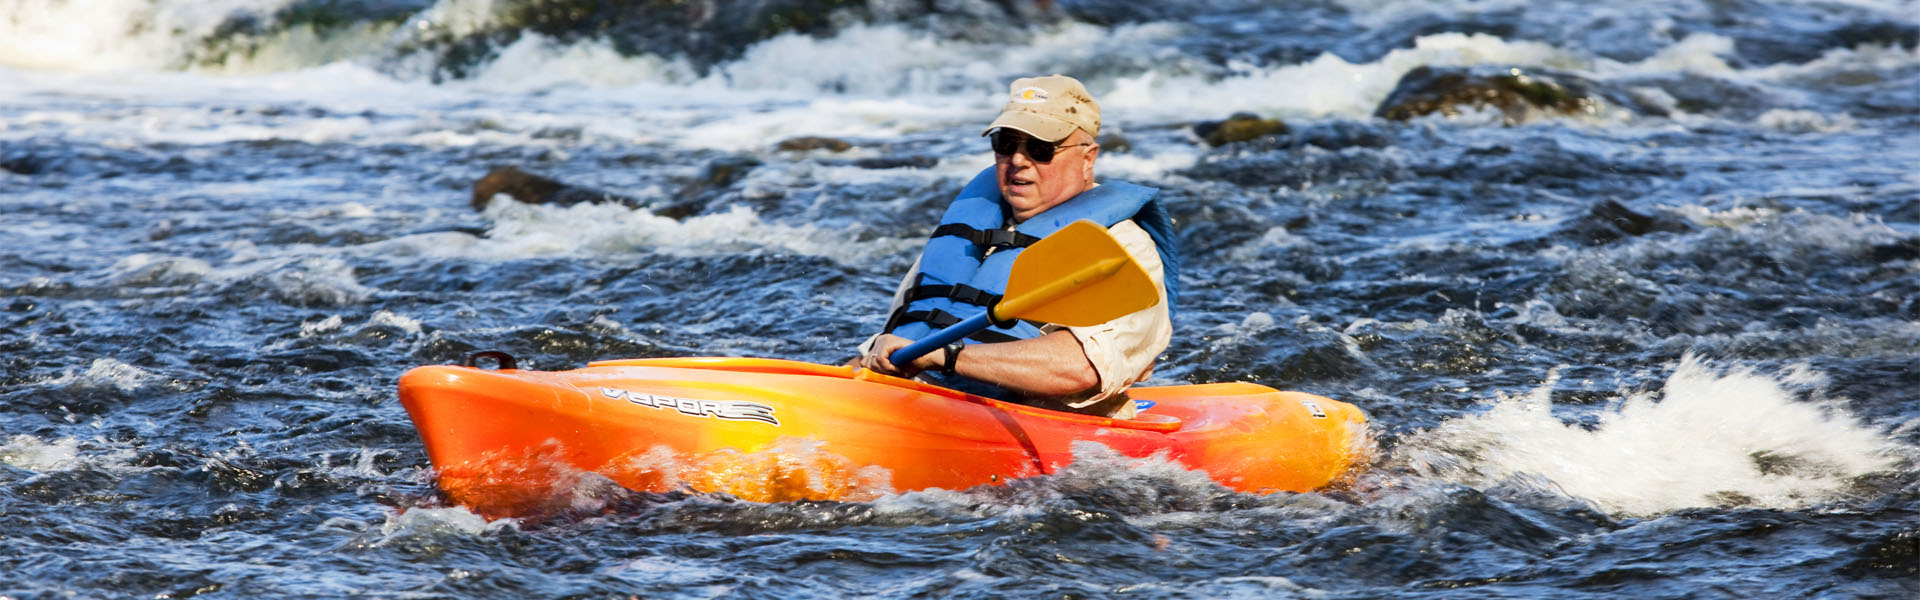 kayaking through rapids